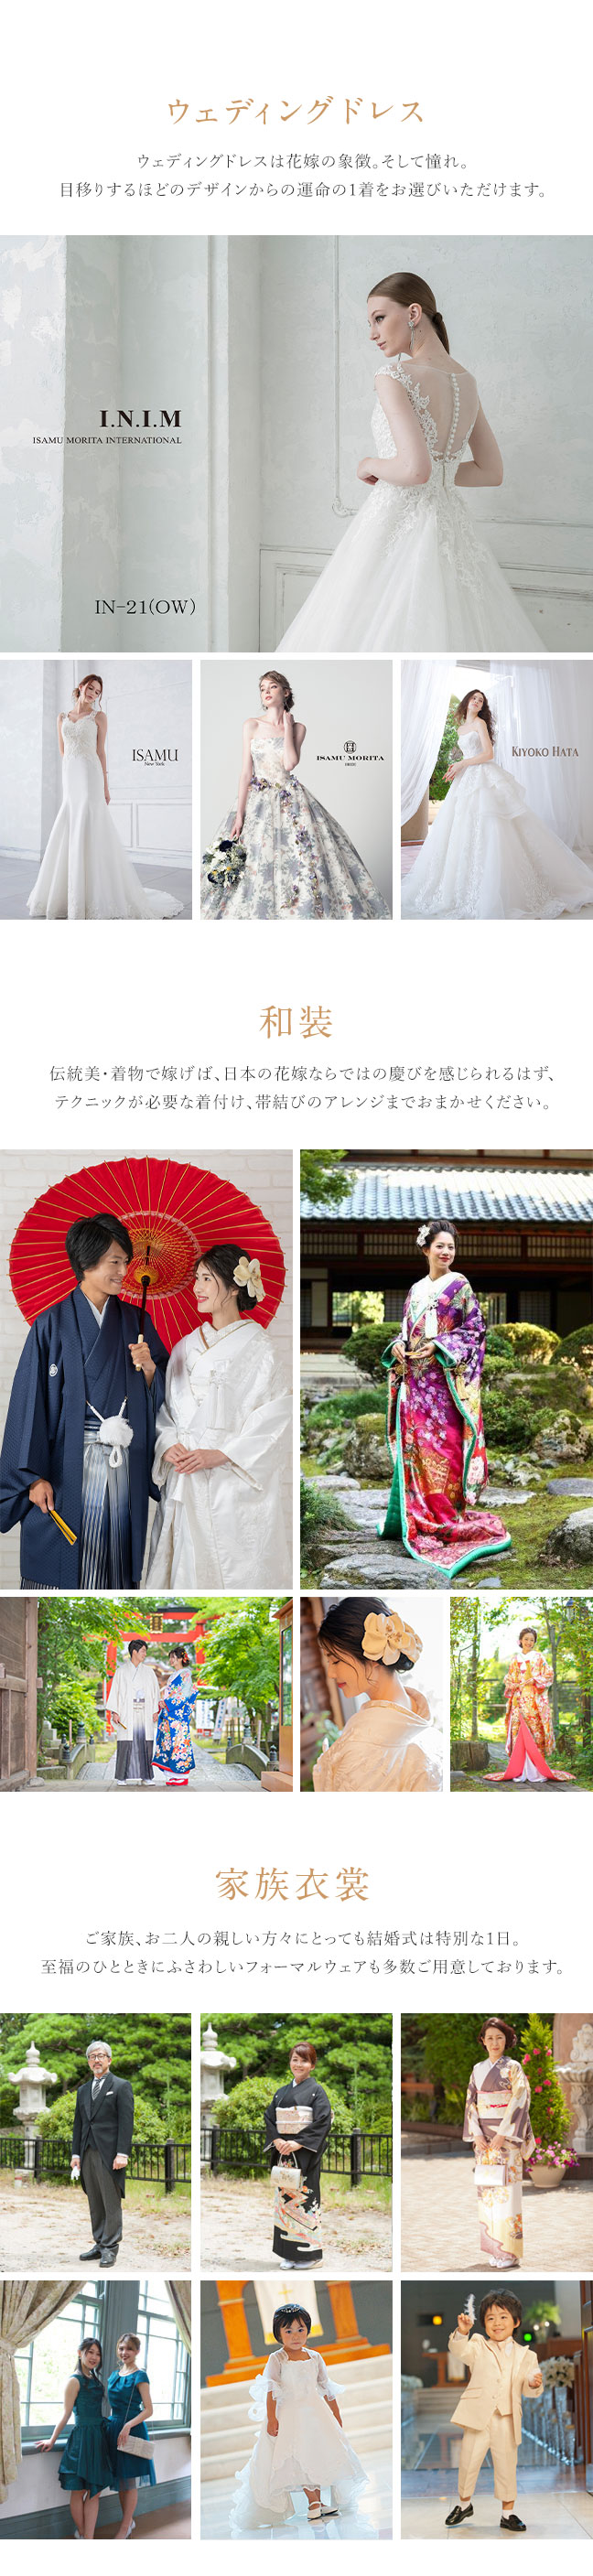 「ウェディングドレス」ウェディングドレスは花嫁の象徴。そして憧れ。目移りするほどのデザインからの運命の1着をお選びいただけます。「和装」伝統美・着物で嫁げば、日本の花嫁ならではの慶びを感じられるはず、テクニックが必要な着付け、帯結びのアレンジまでおまかせください。「家族衣裳」ご家族、お二人の親しい方々にとっても結婚式は特別な1日。至福のひとときにふさわしいフォーマルウェアも多数ご用意しております。